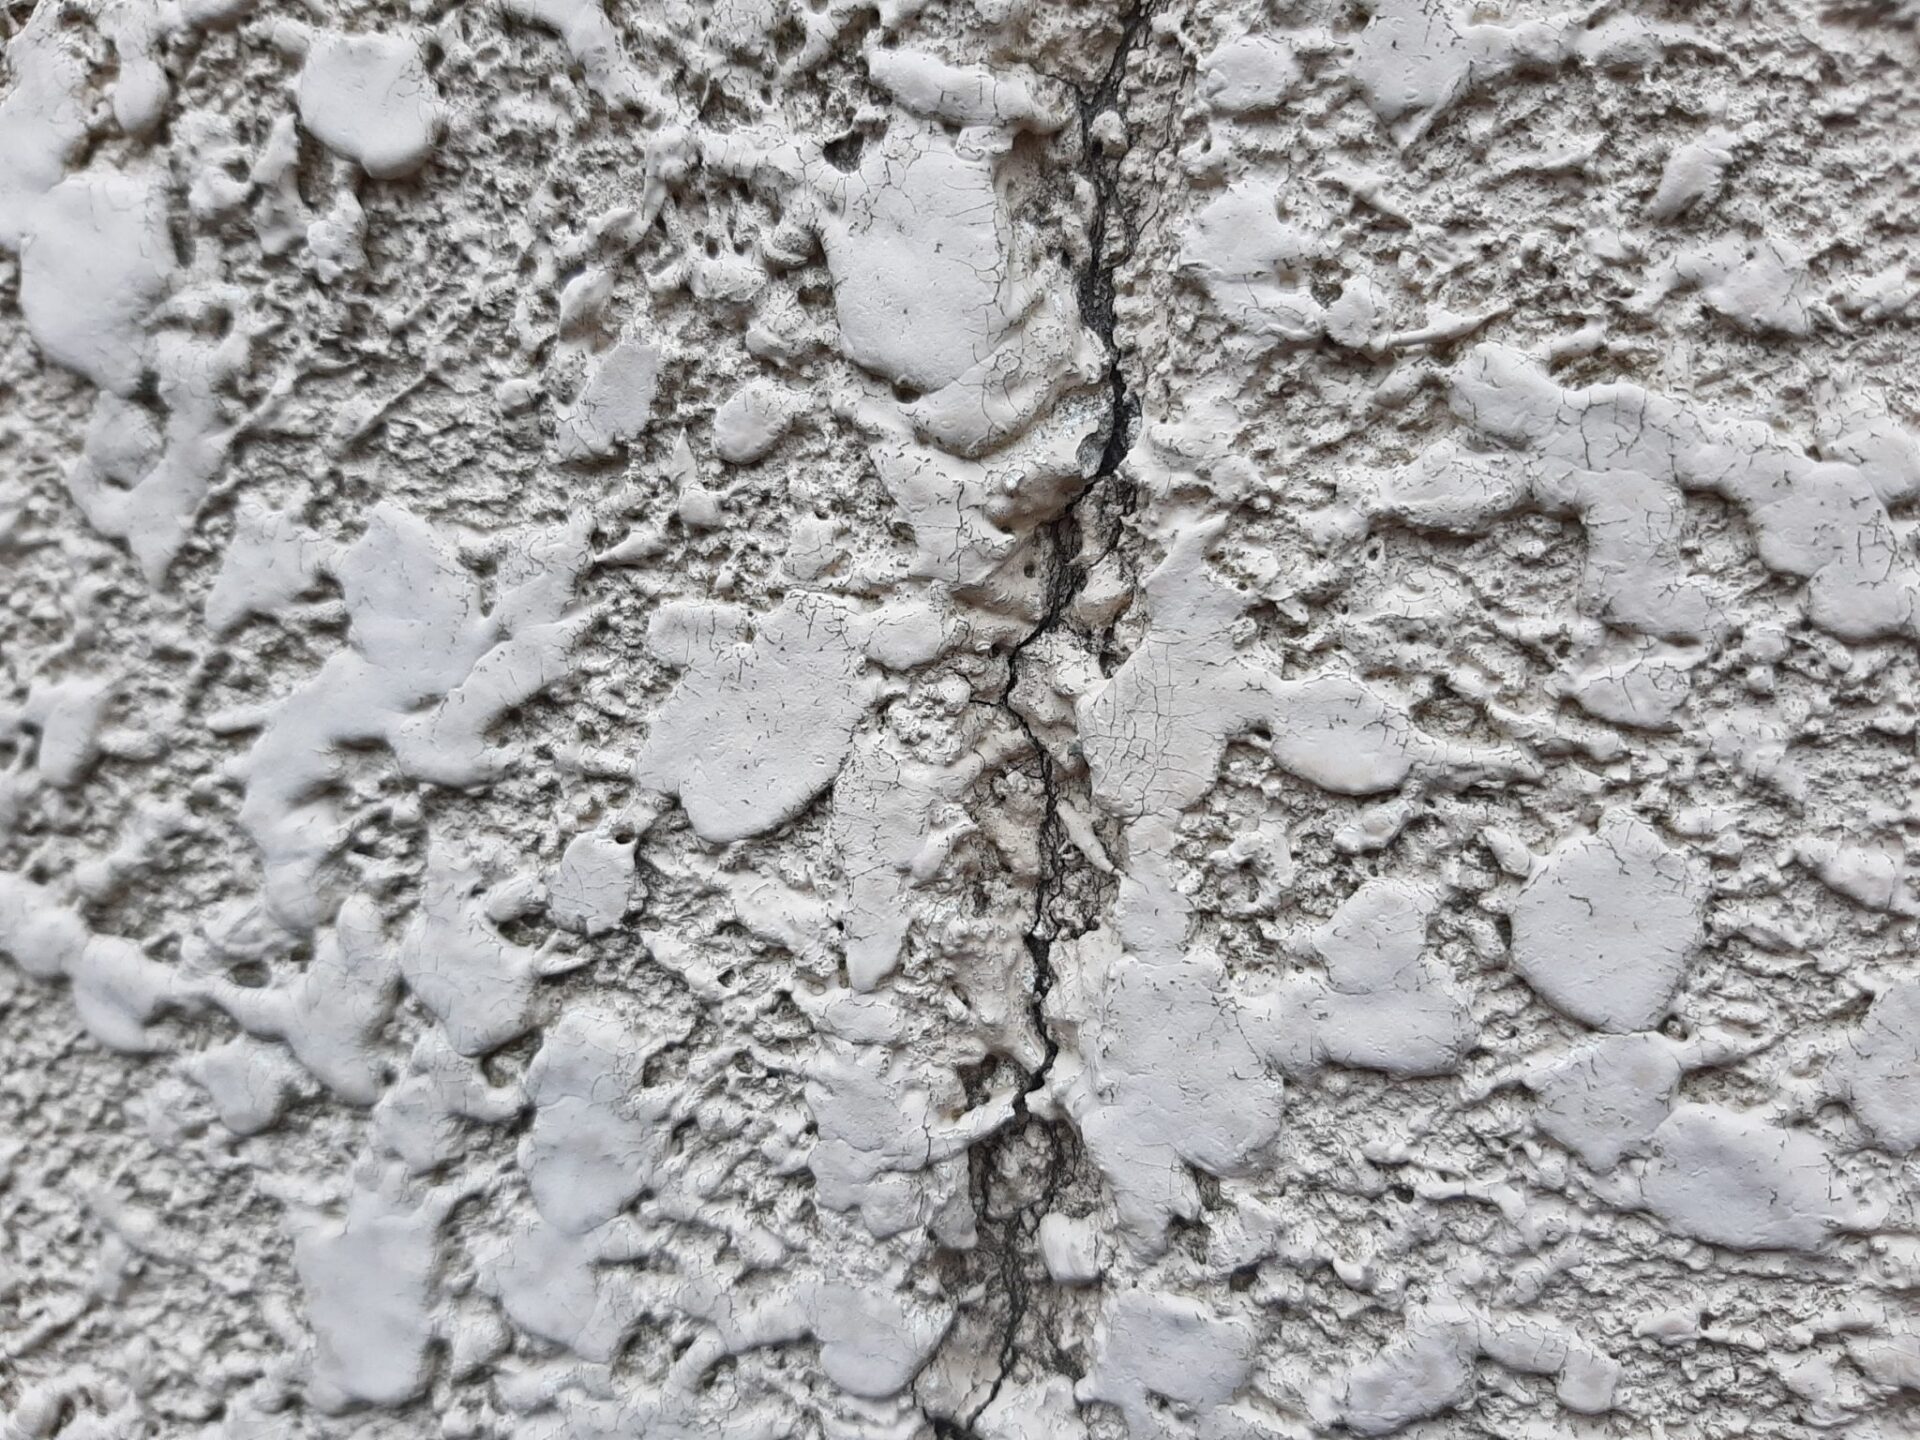 塗膜が劣化する過程について。外壁塗装のベストタイミングはこんな症状！